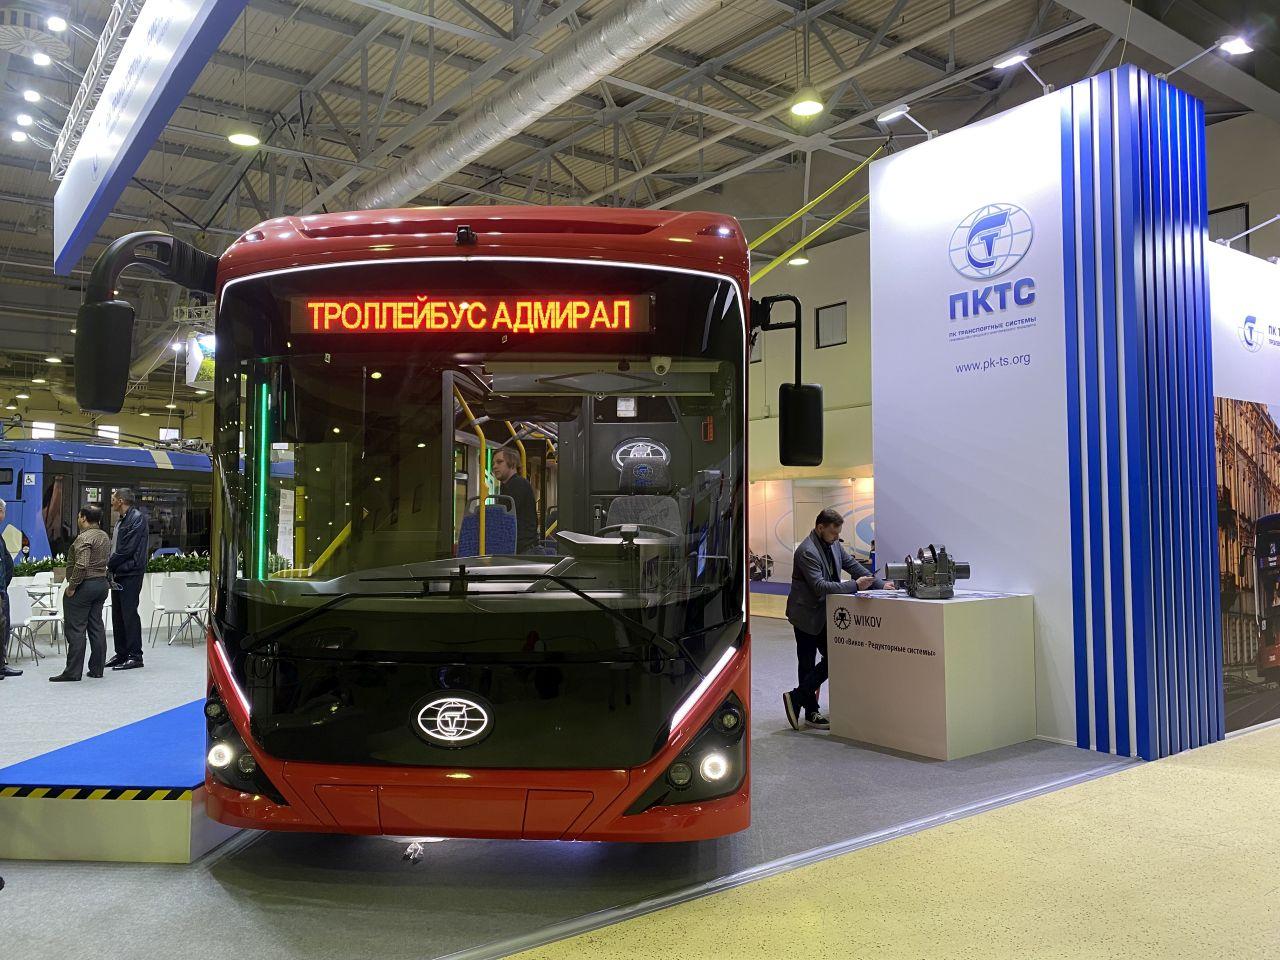 фото: В Курске начали курсировать троллейбусы, оборудованные импортозамещенными батареями с рекордно высокой плотностью энергии